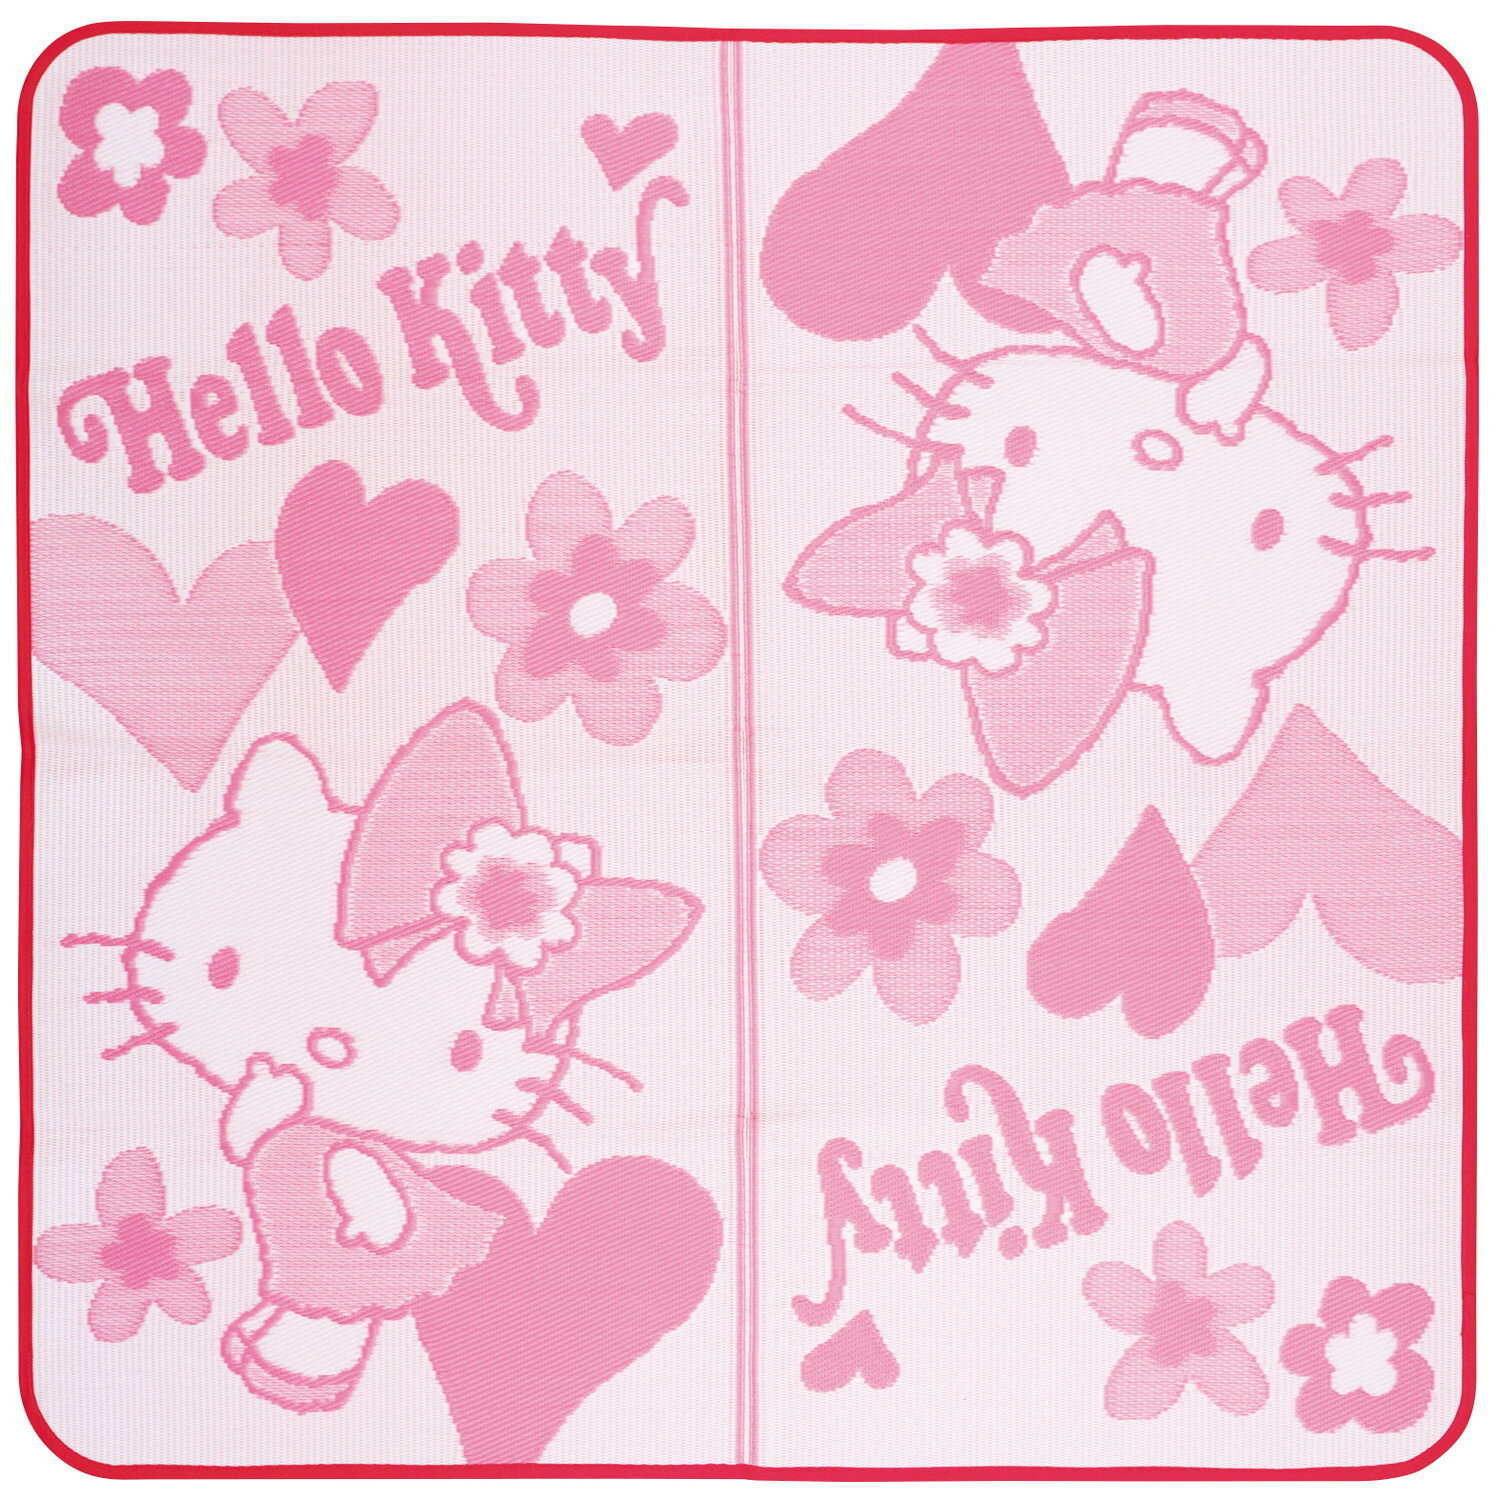 【領券滿額折100】 日本製凱蒂貓Hello kitty草蓆(176x176cm)